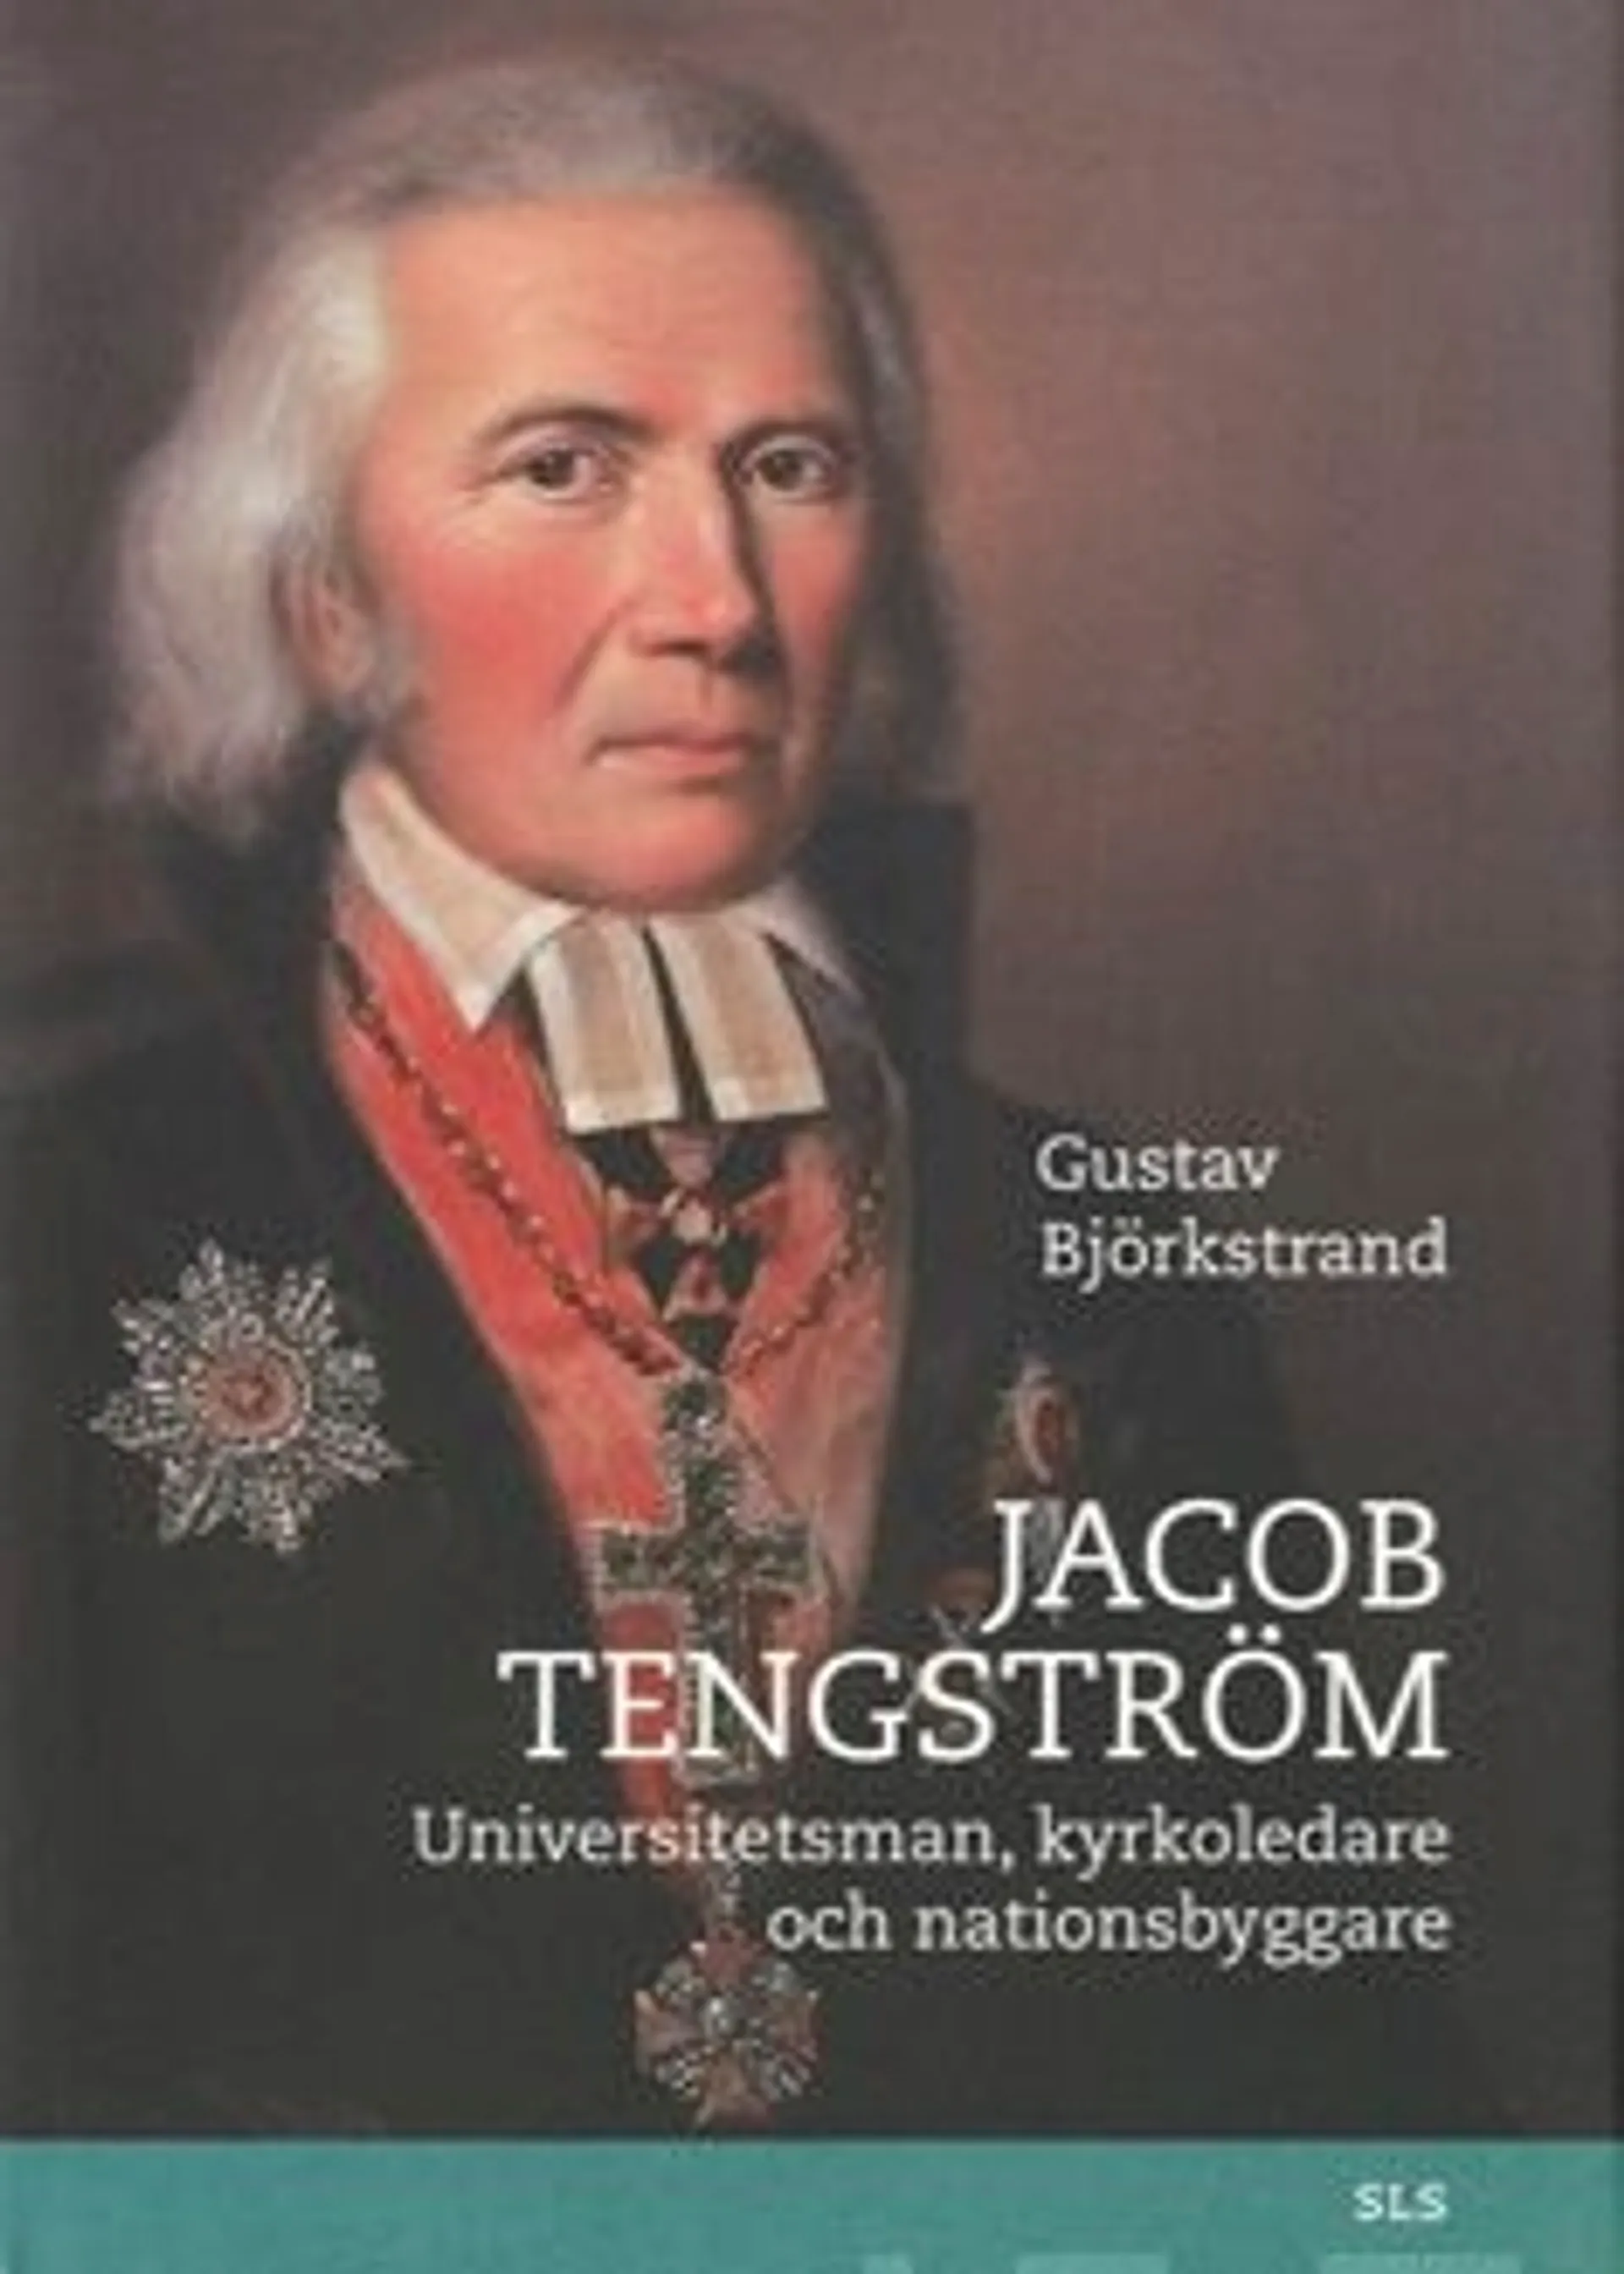 Björkstrand, Jacob Tengström - universitetsman, kyrkoledare och nationsbyggare